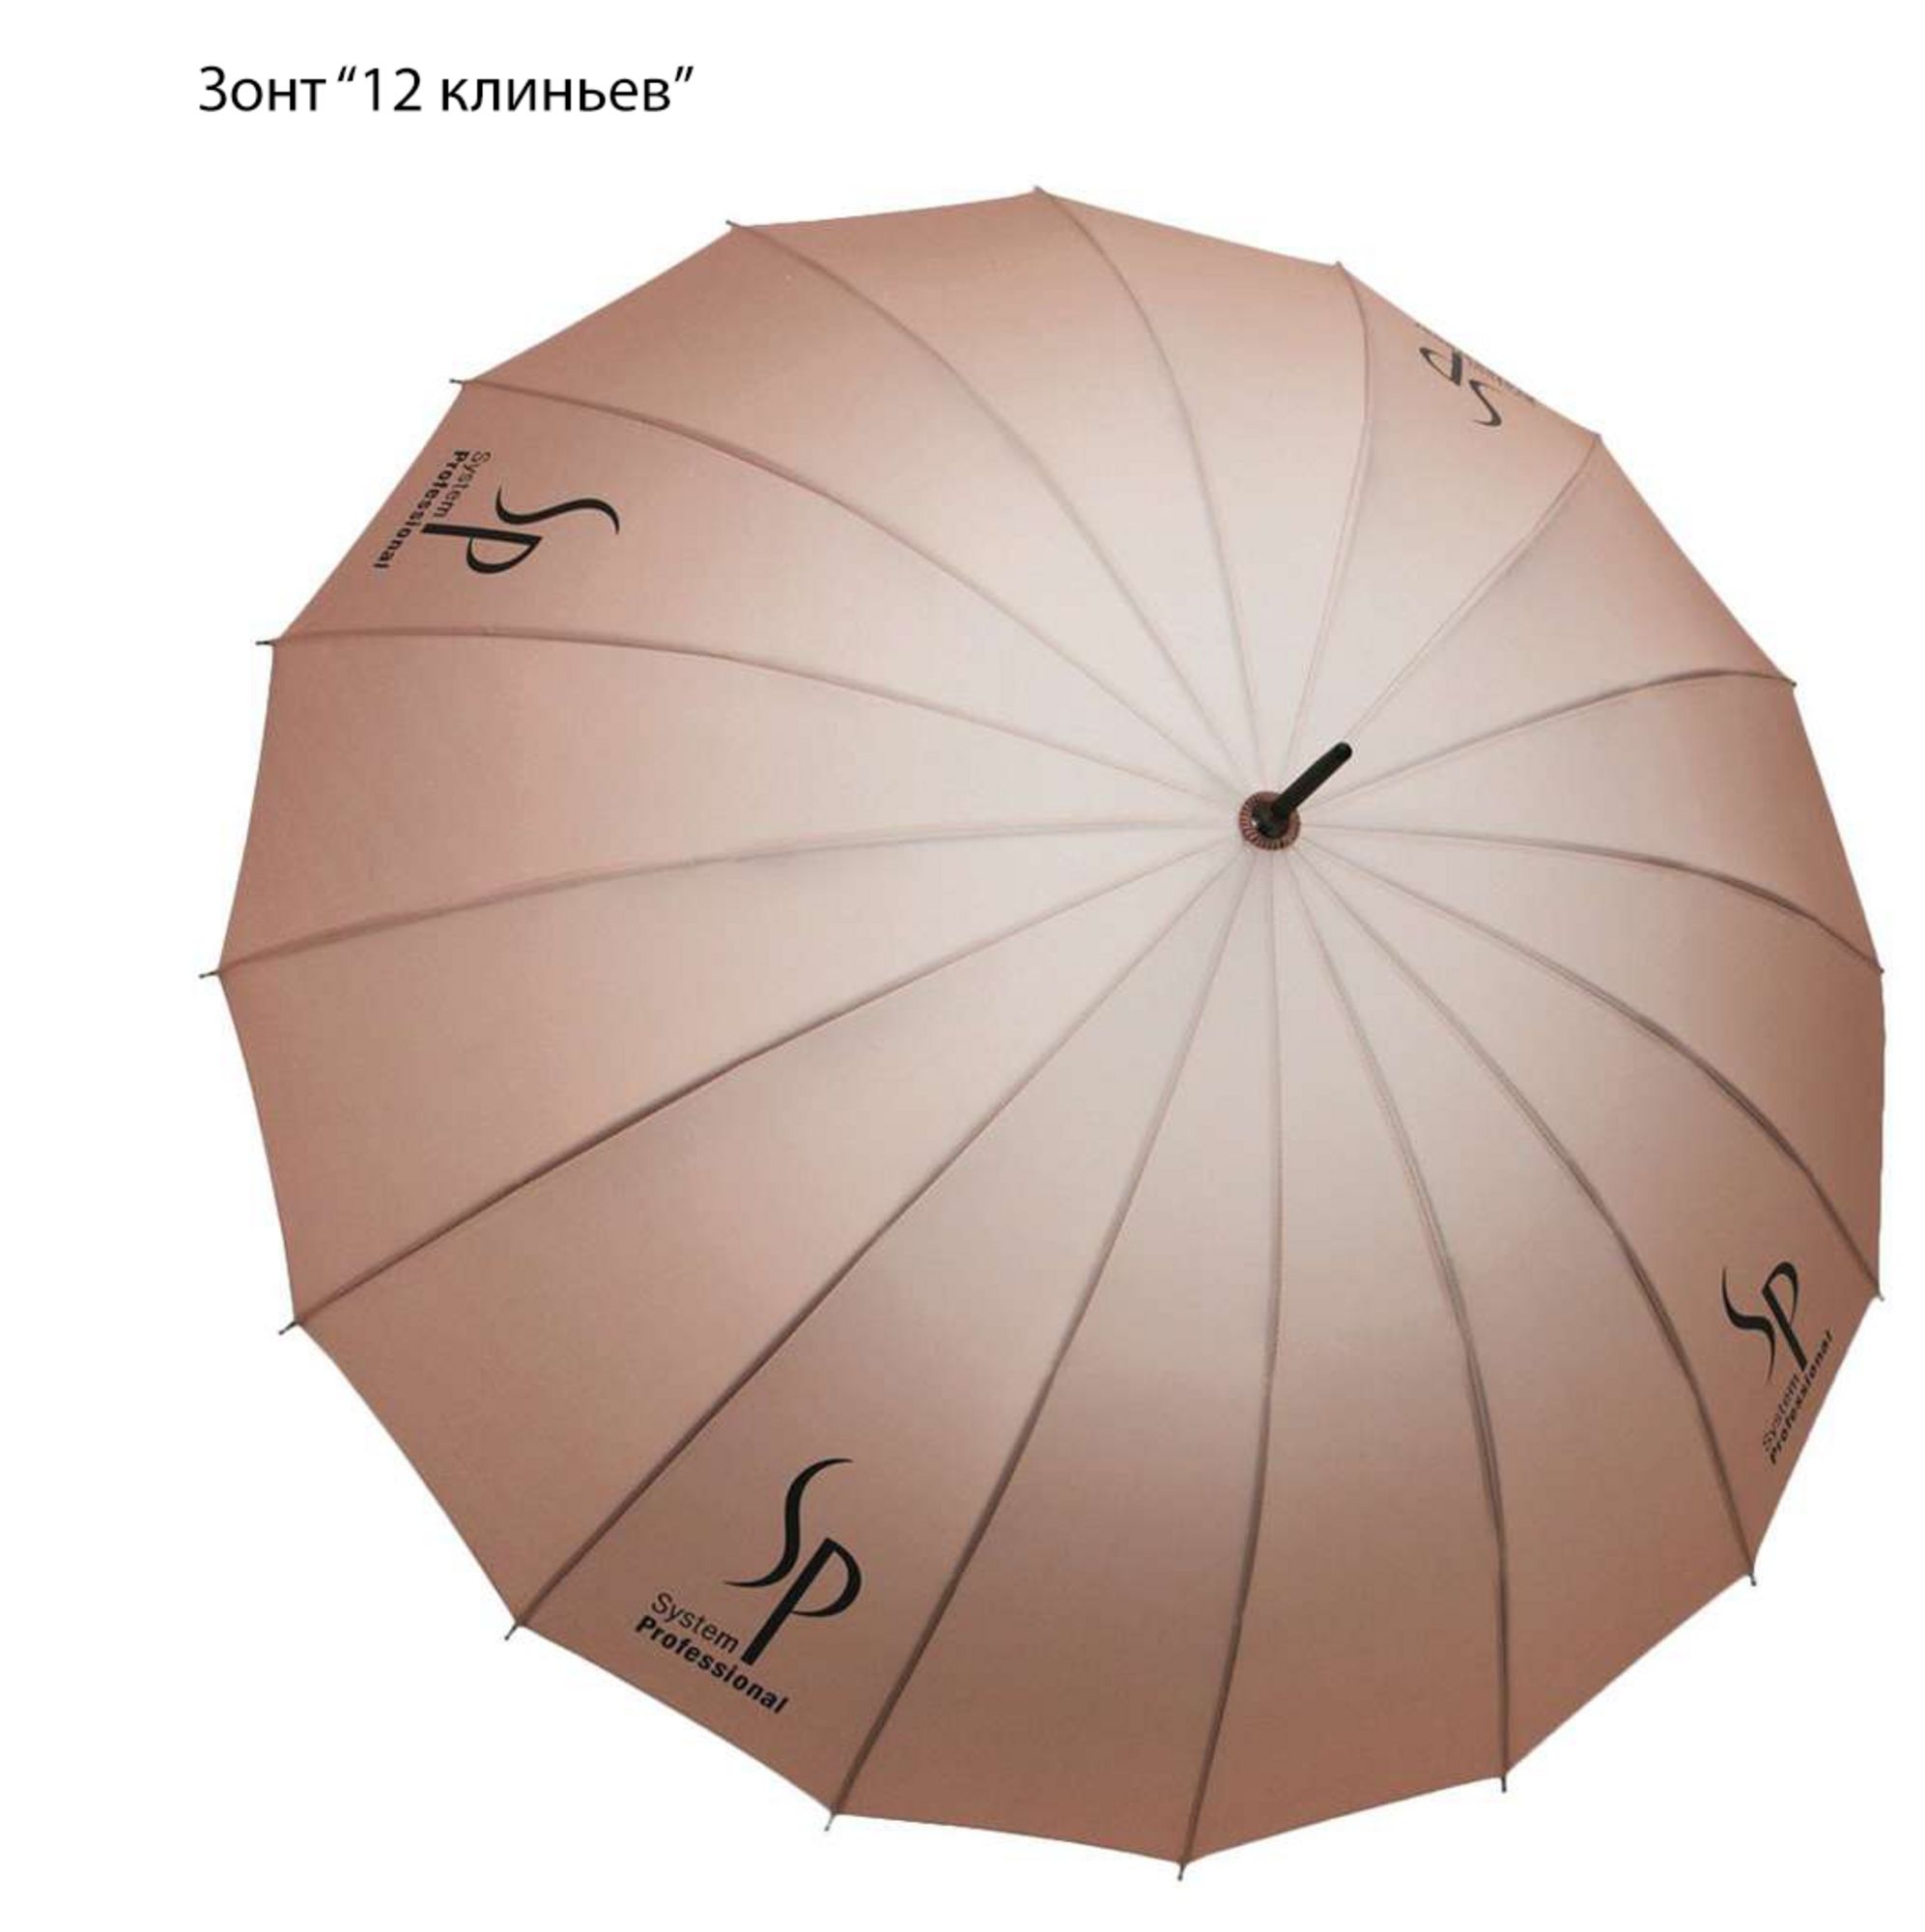 Зонты оригинальной формы, полиэстер / эпонж